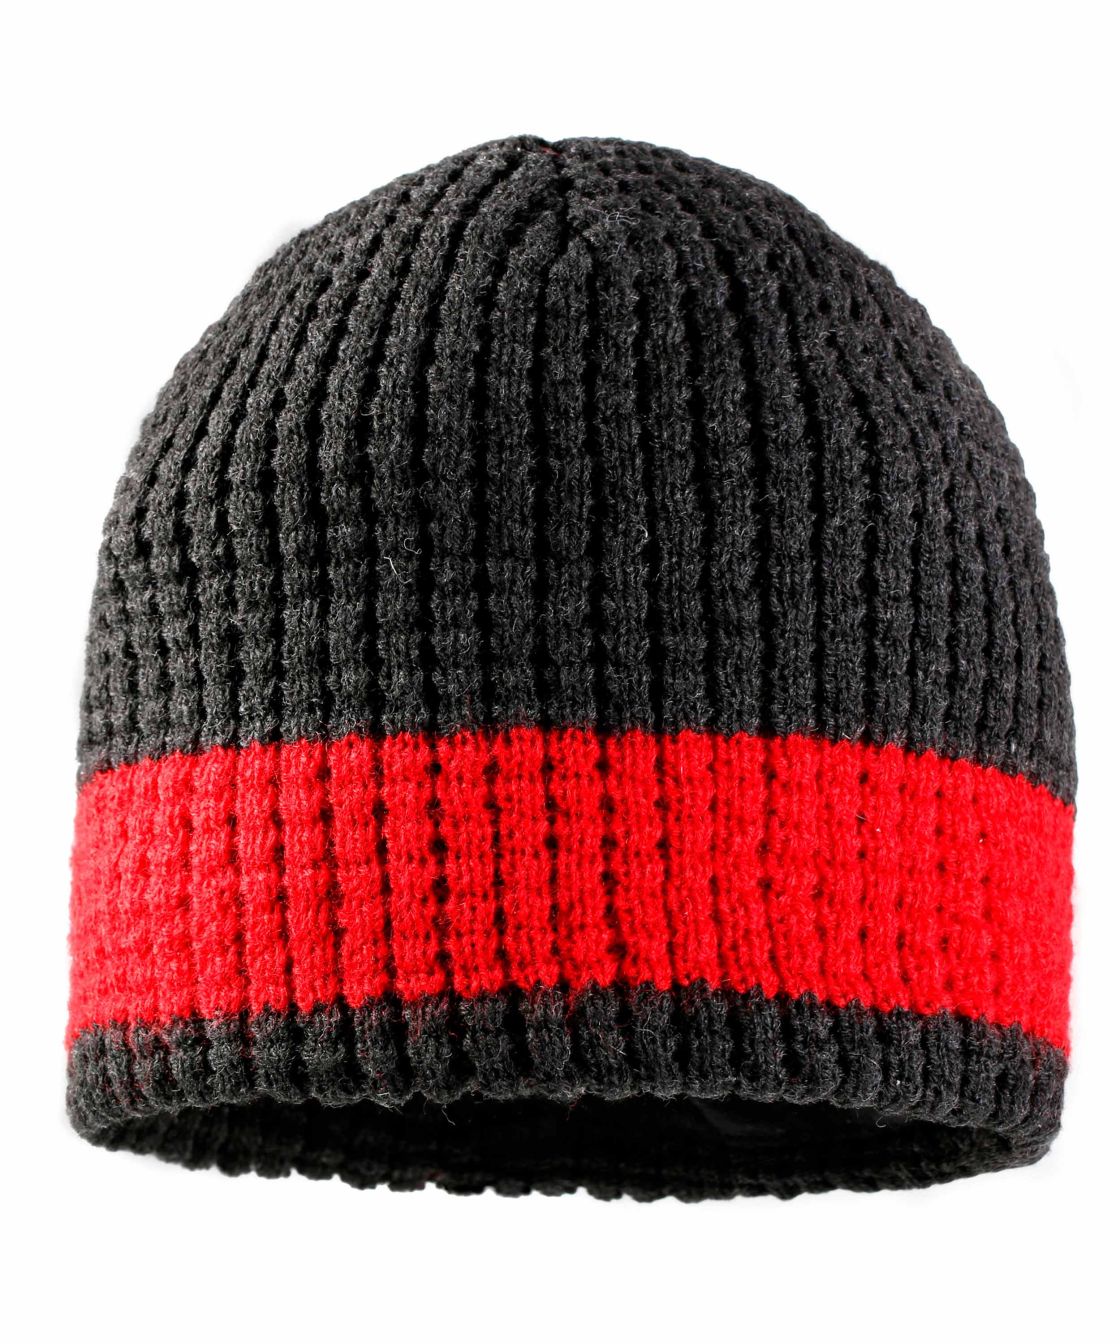 Mütze Stripe, anthrazit-melange/rot, anthrazit-meliert/rot